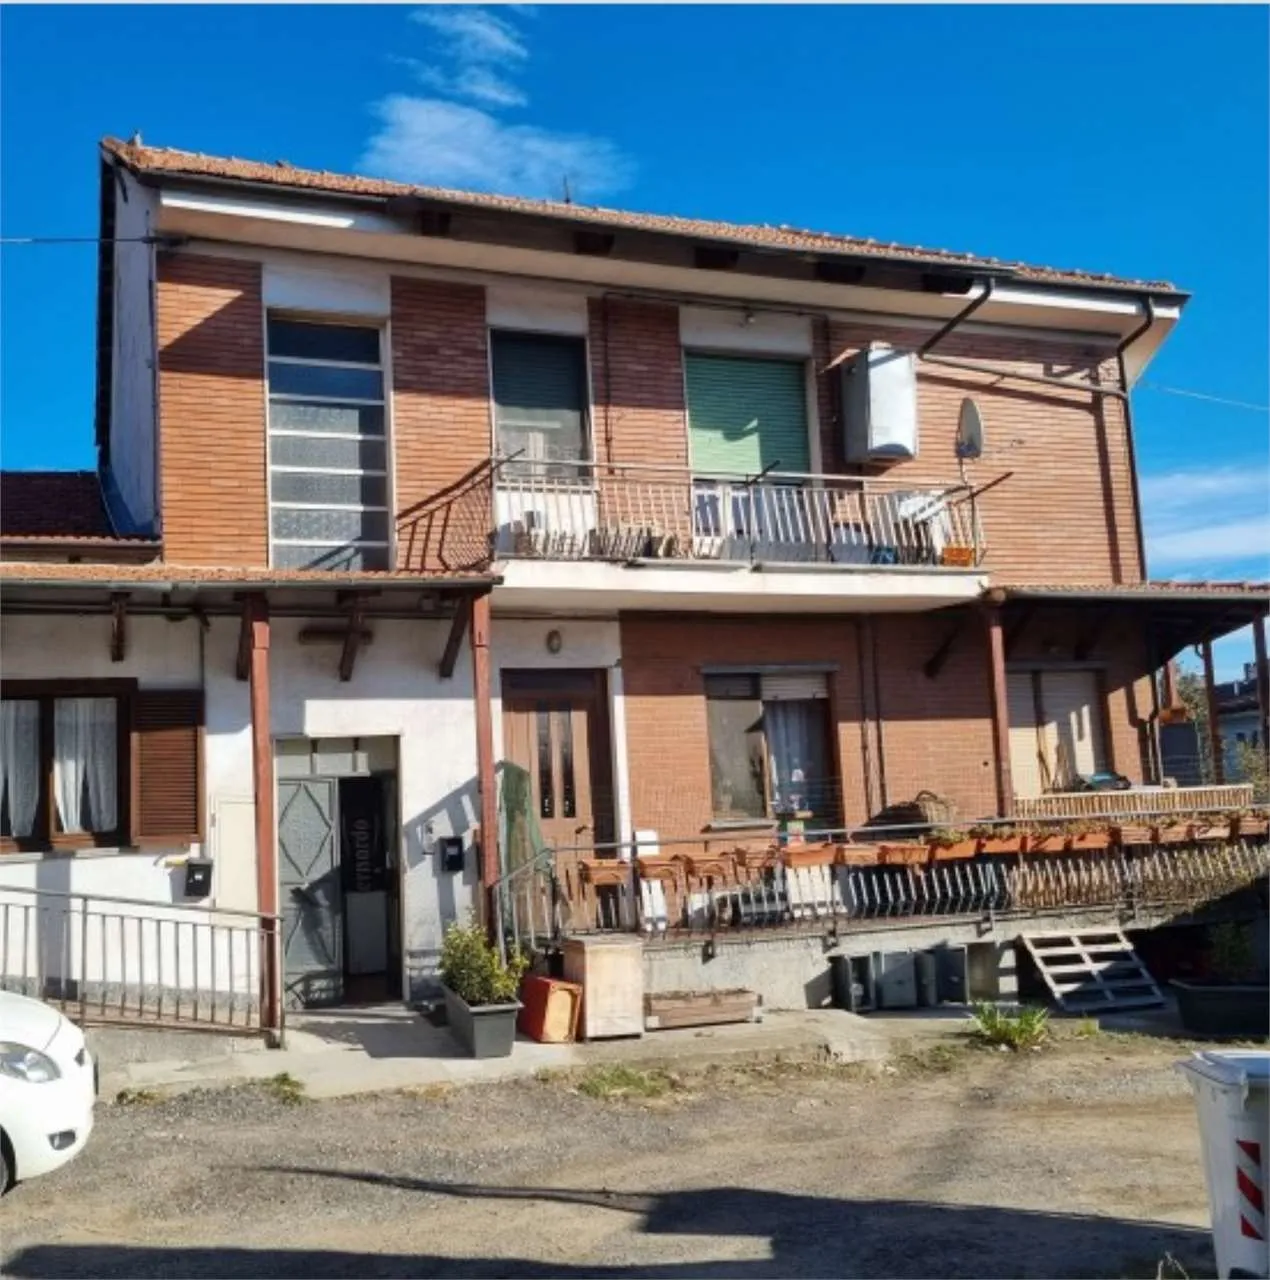 Immagine per Appartamento in asta a Alpignano via Caselette 18